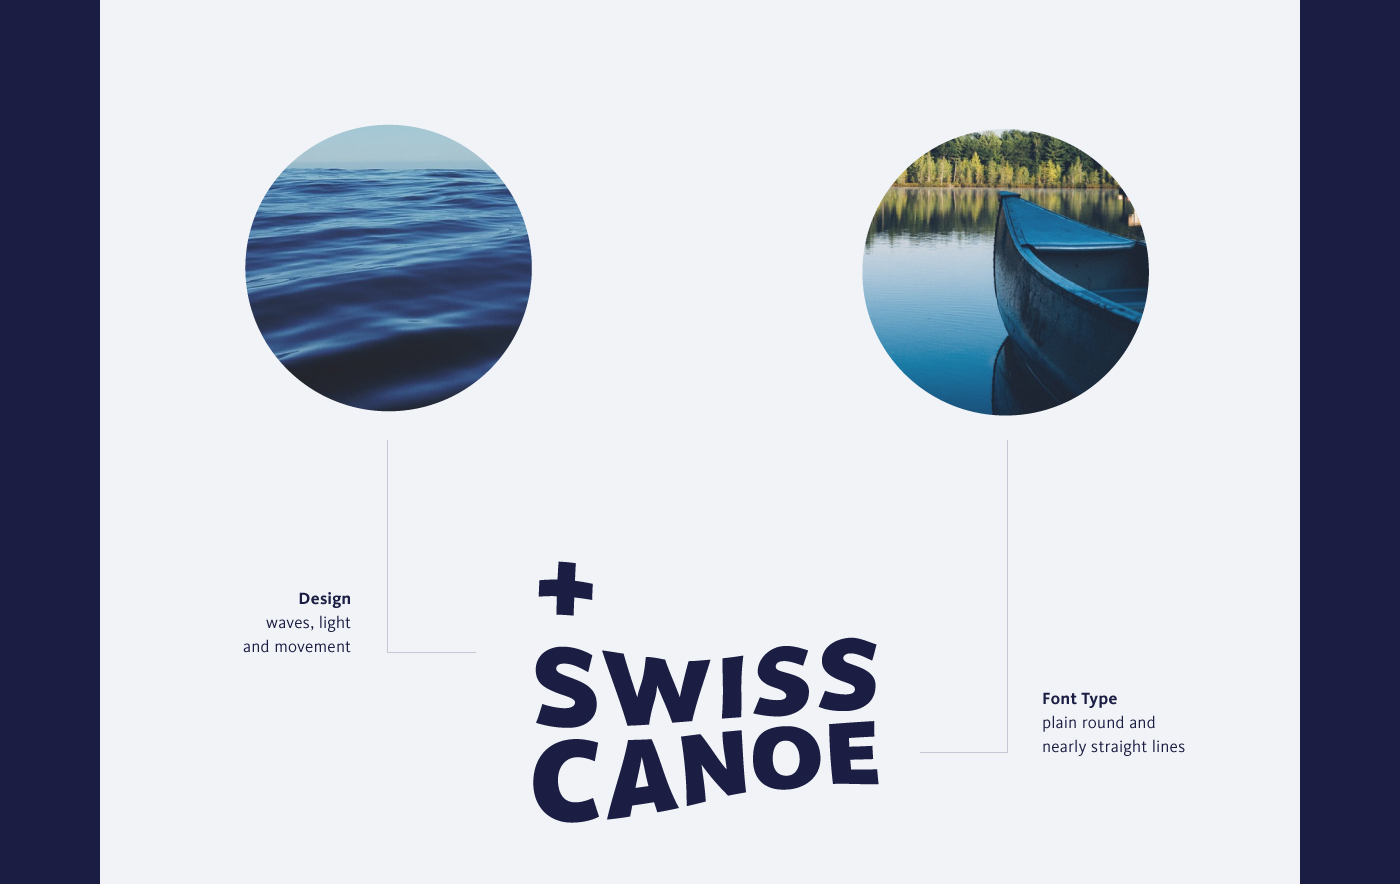 canoe swiss sport kayak water national Switzerland